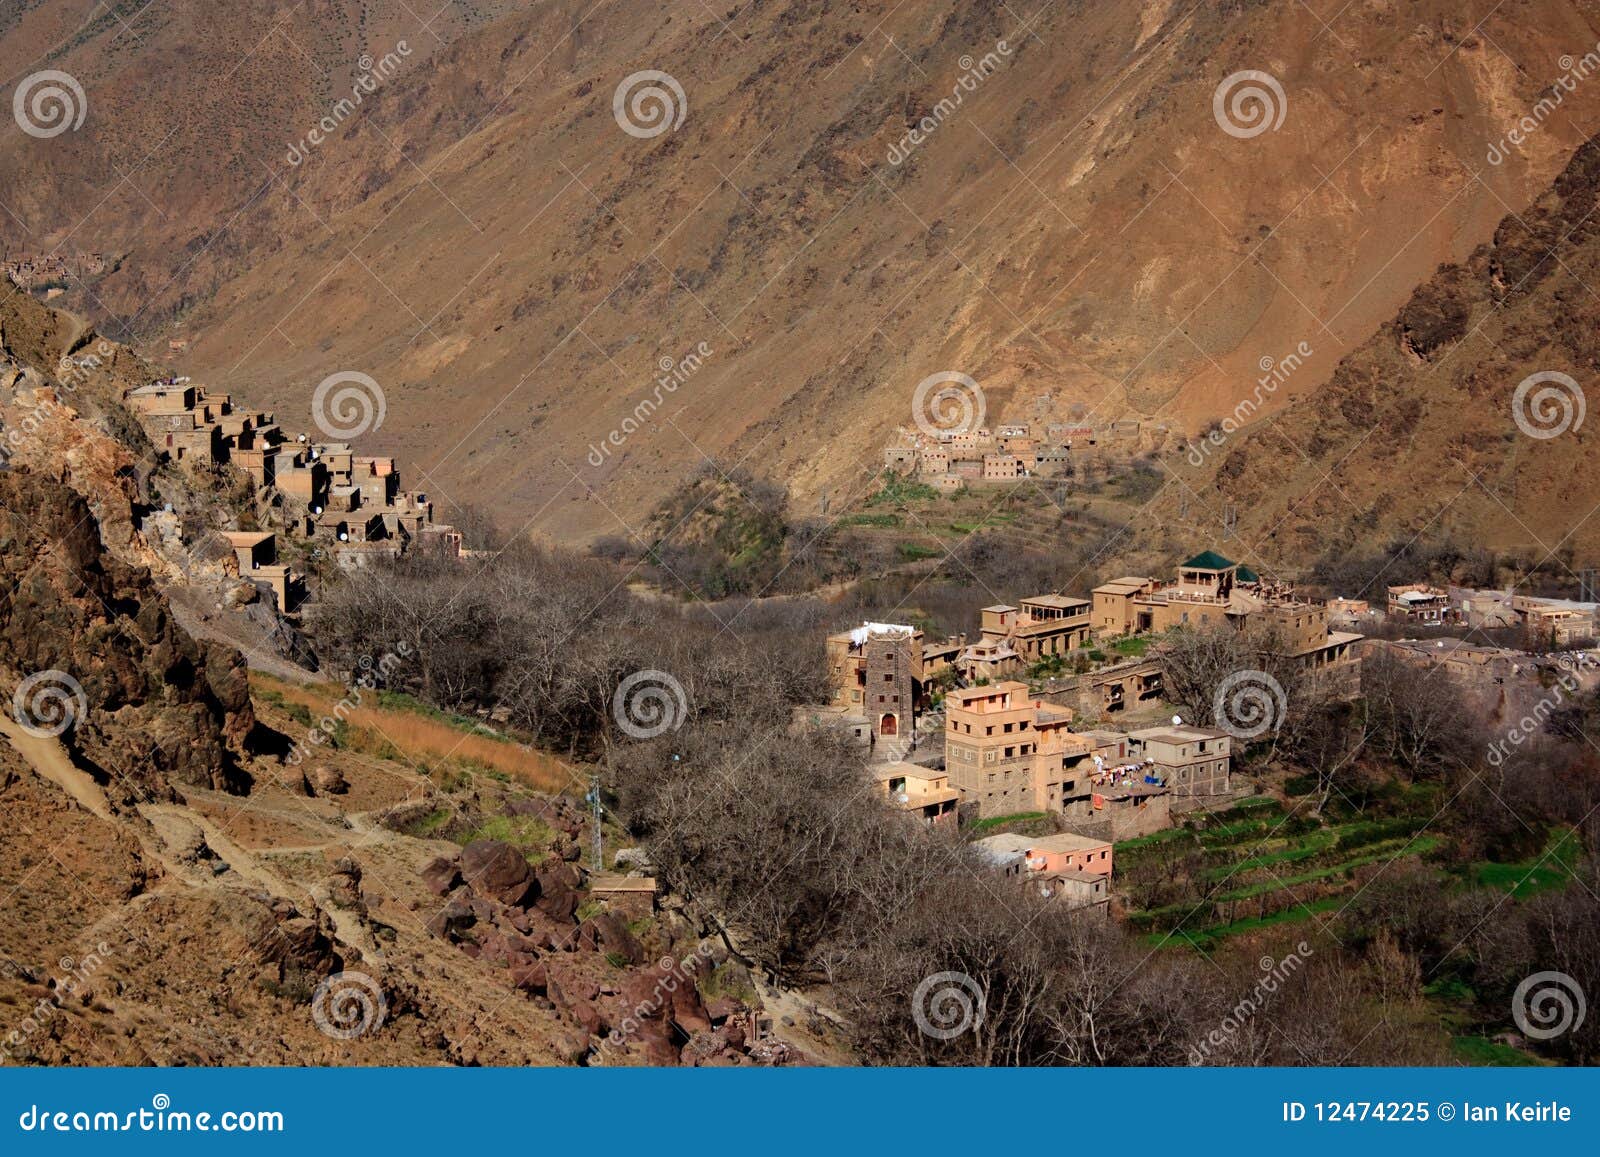 berber villages 1